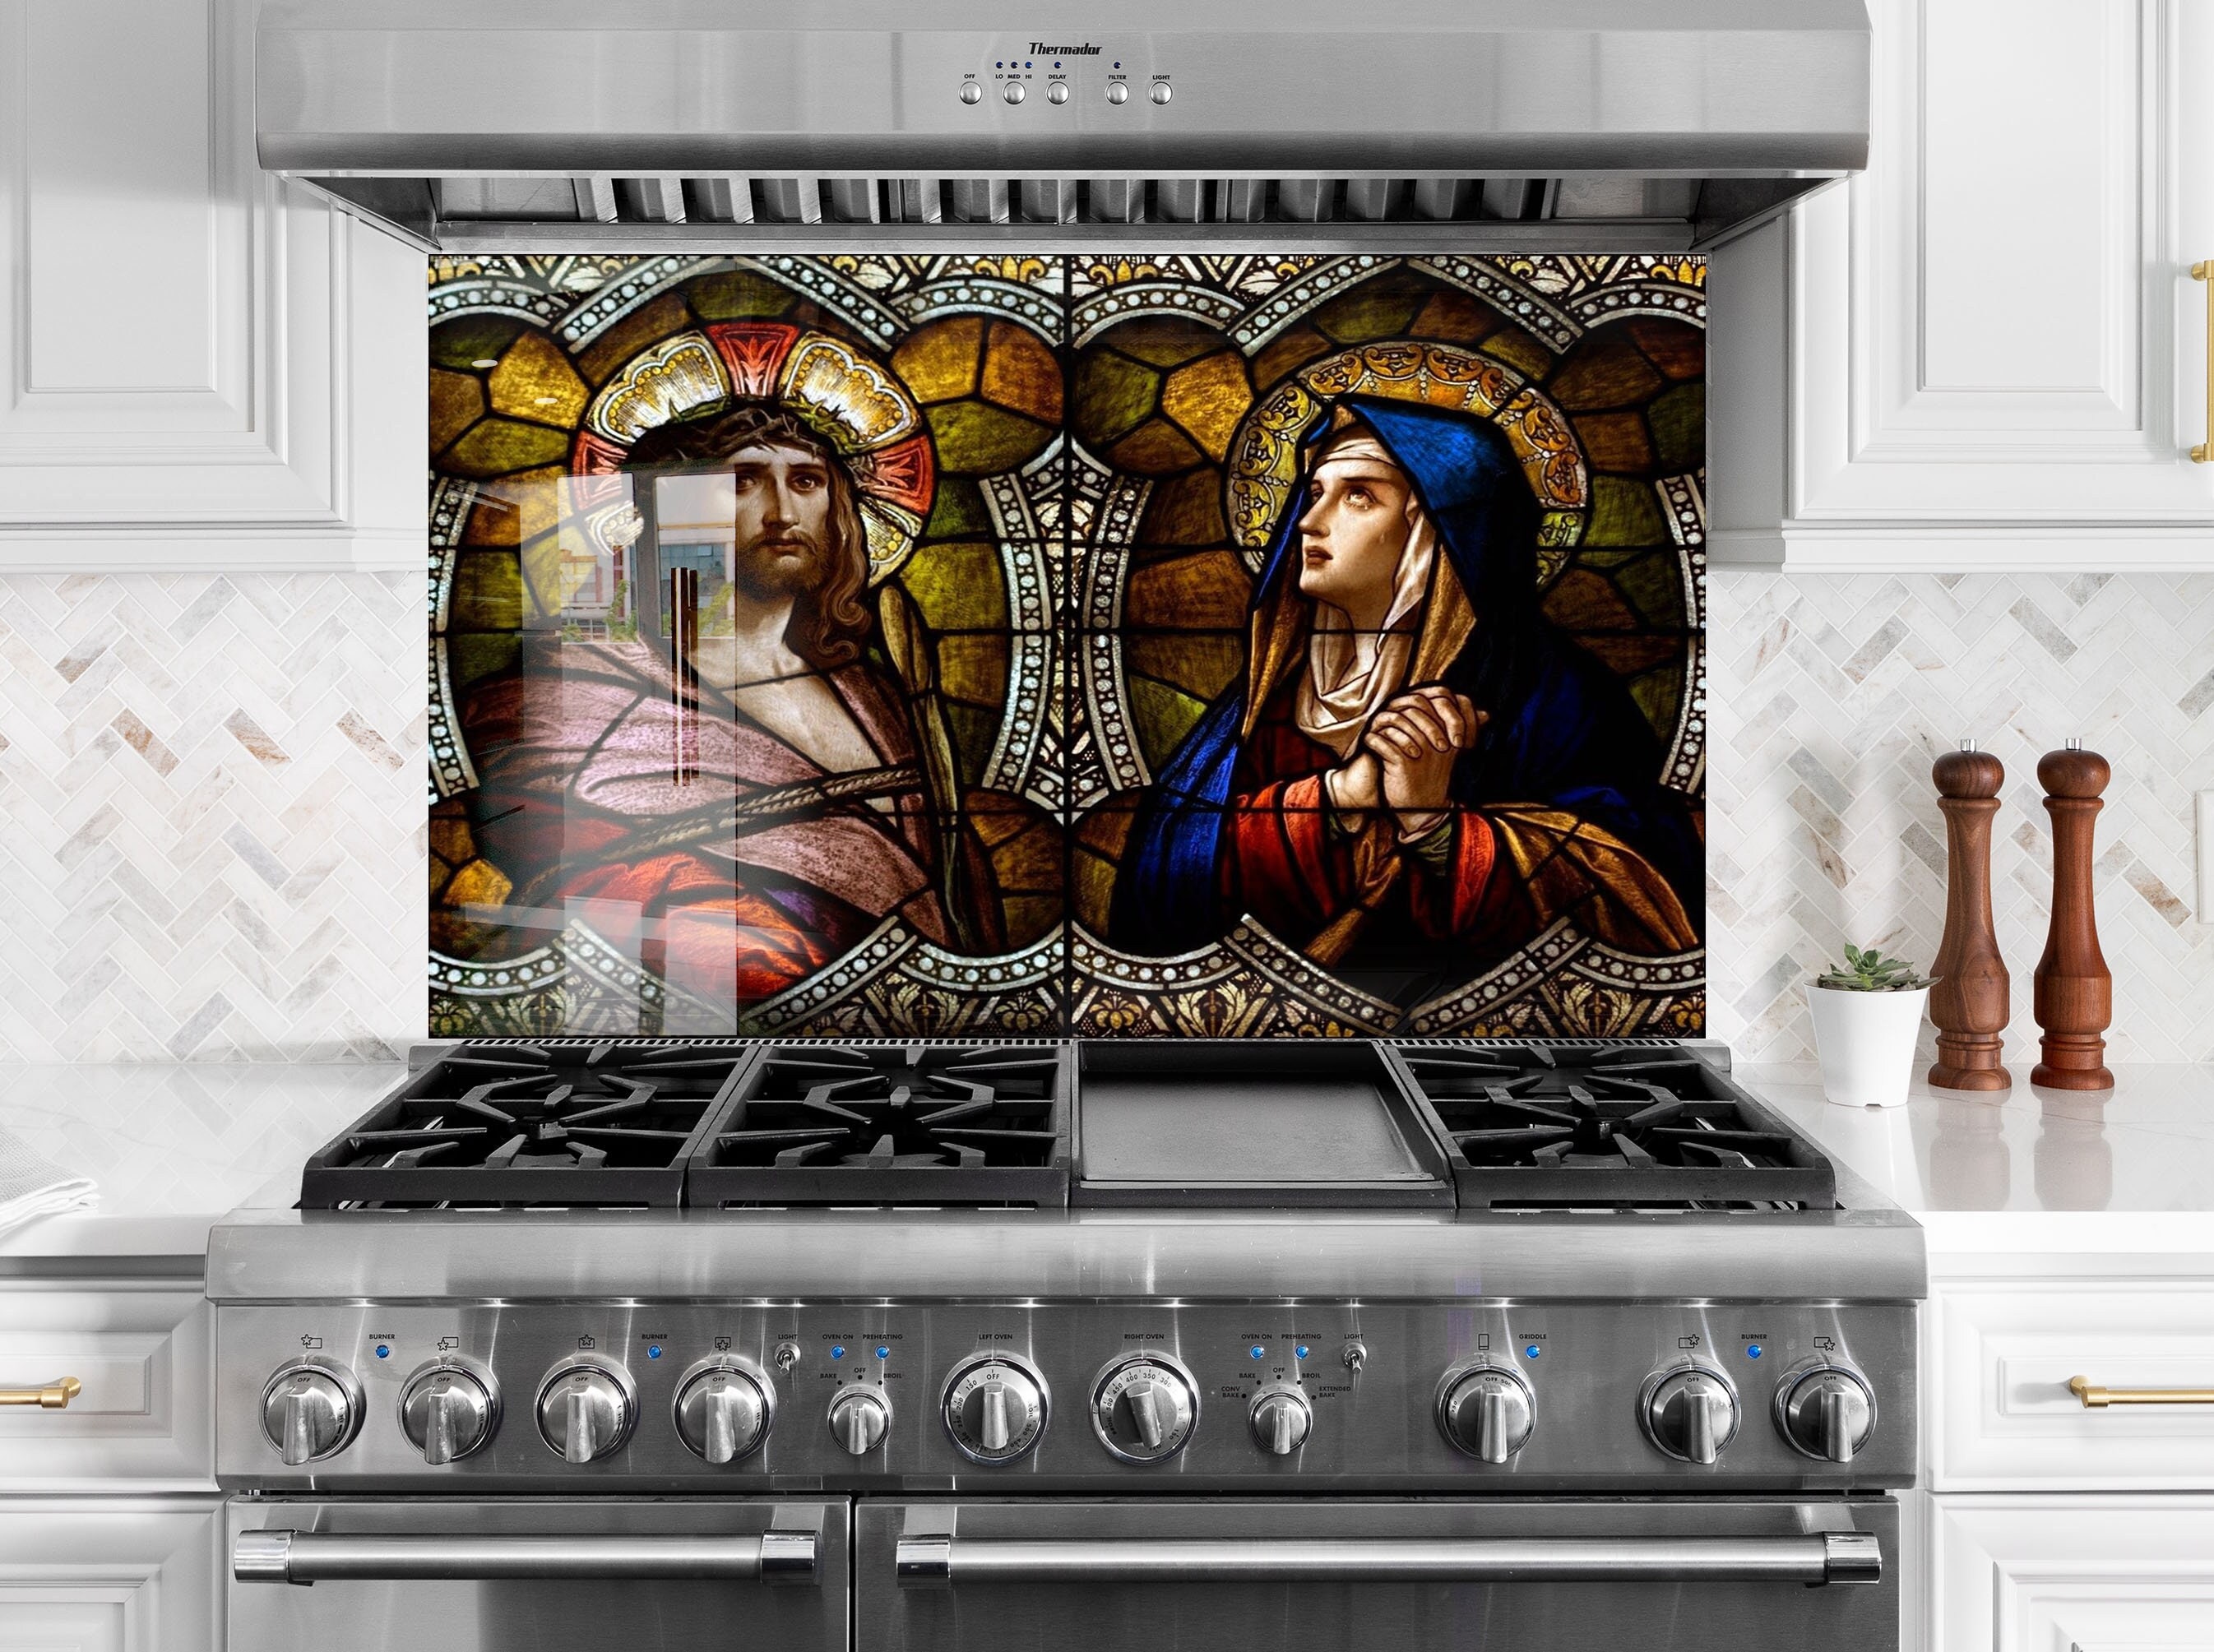 last supper Jesus disciples ceramic tile mural backsplash behind stove  kitchen